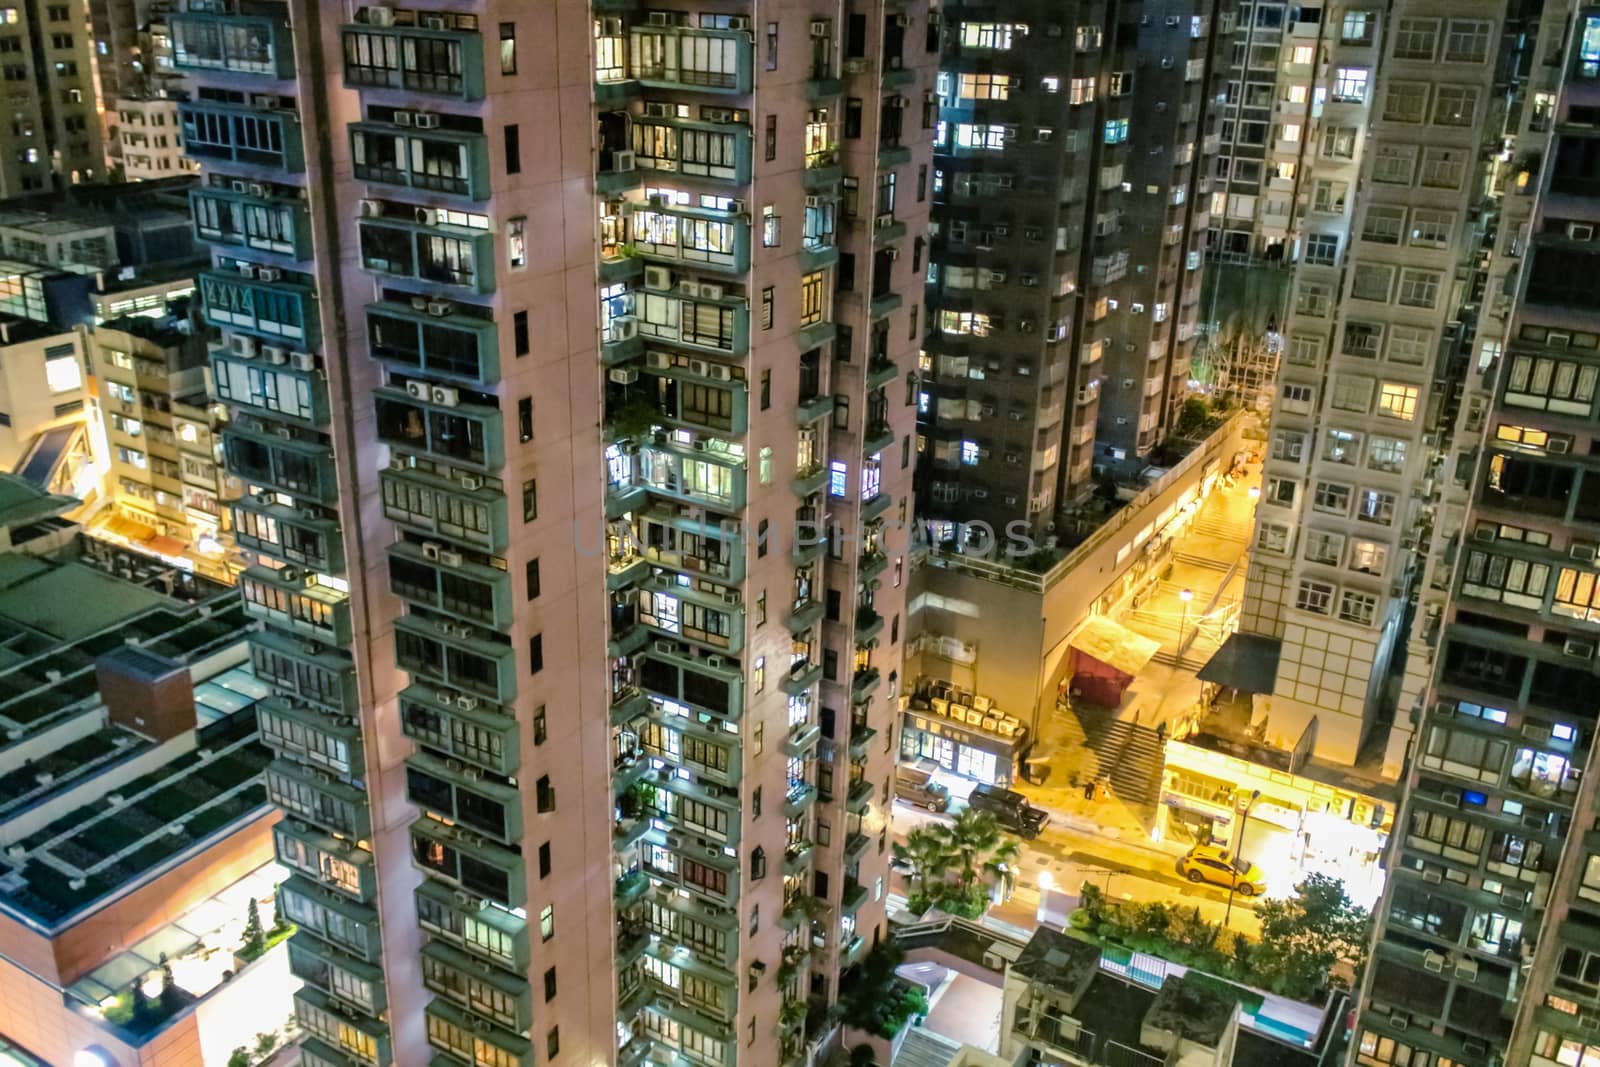 The skyscrapers of Hong Kong close up at night. by rdv27